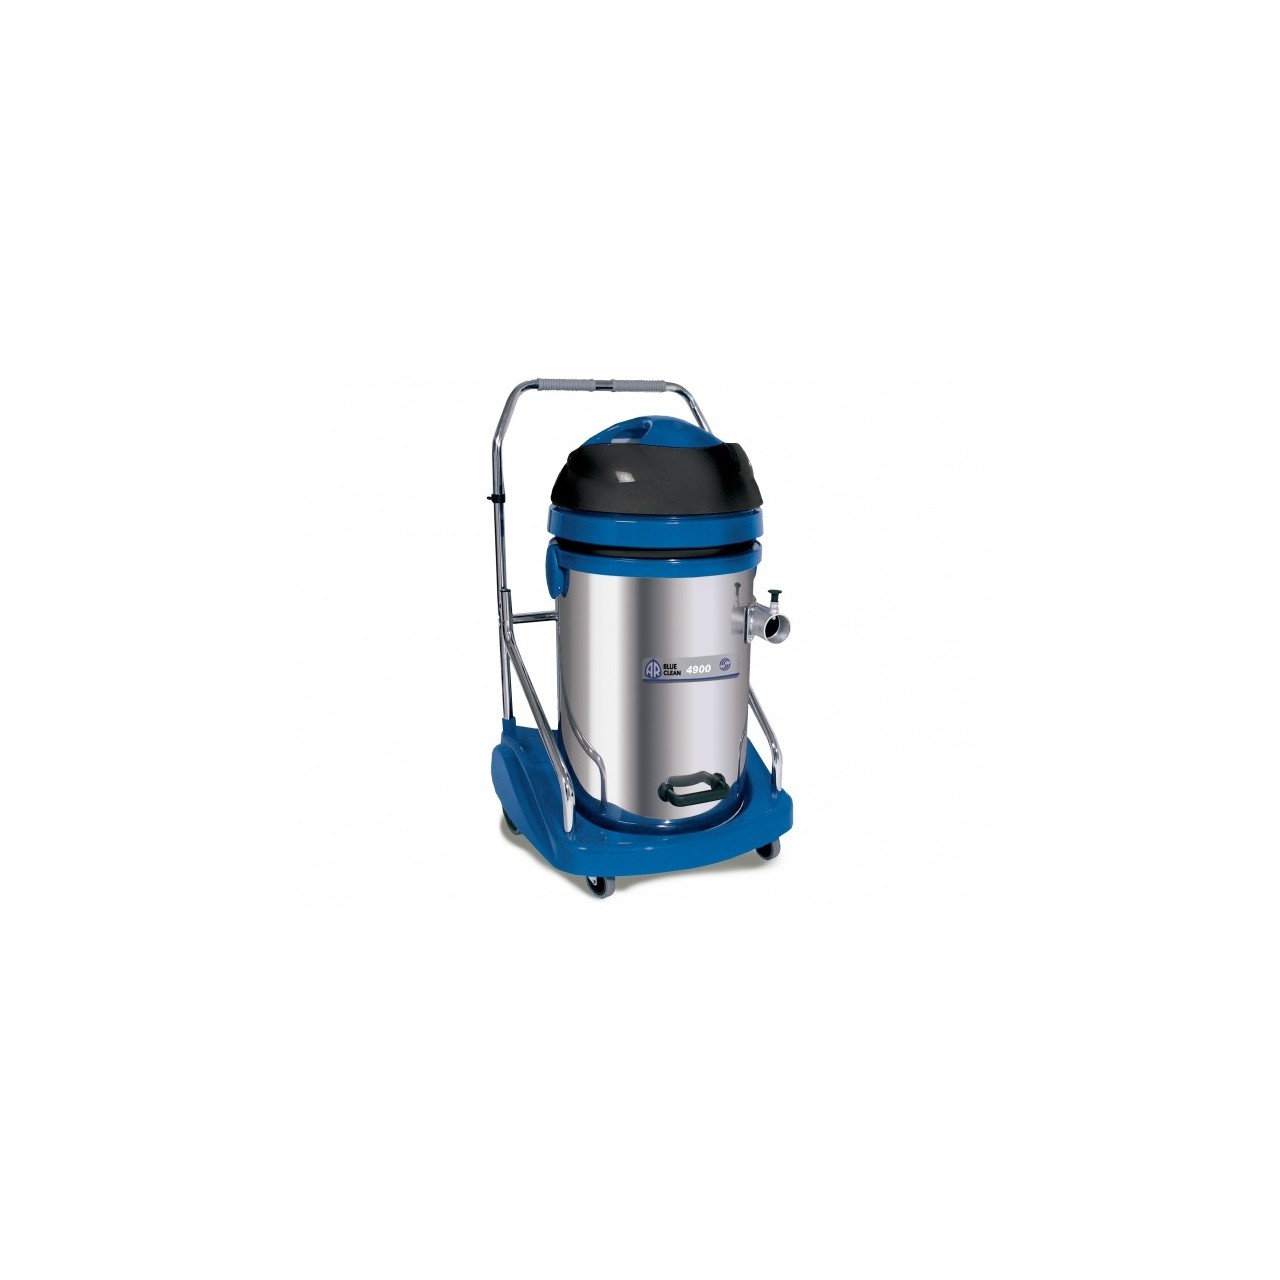 Aspirador industrial Blueclean PRO 3600W 77 litros